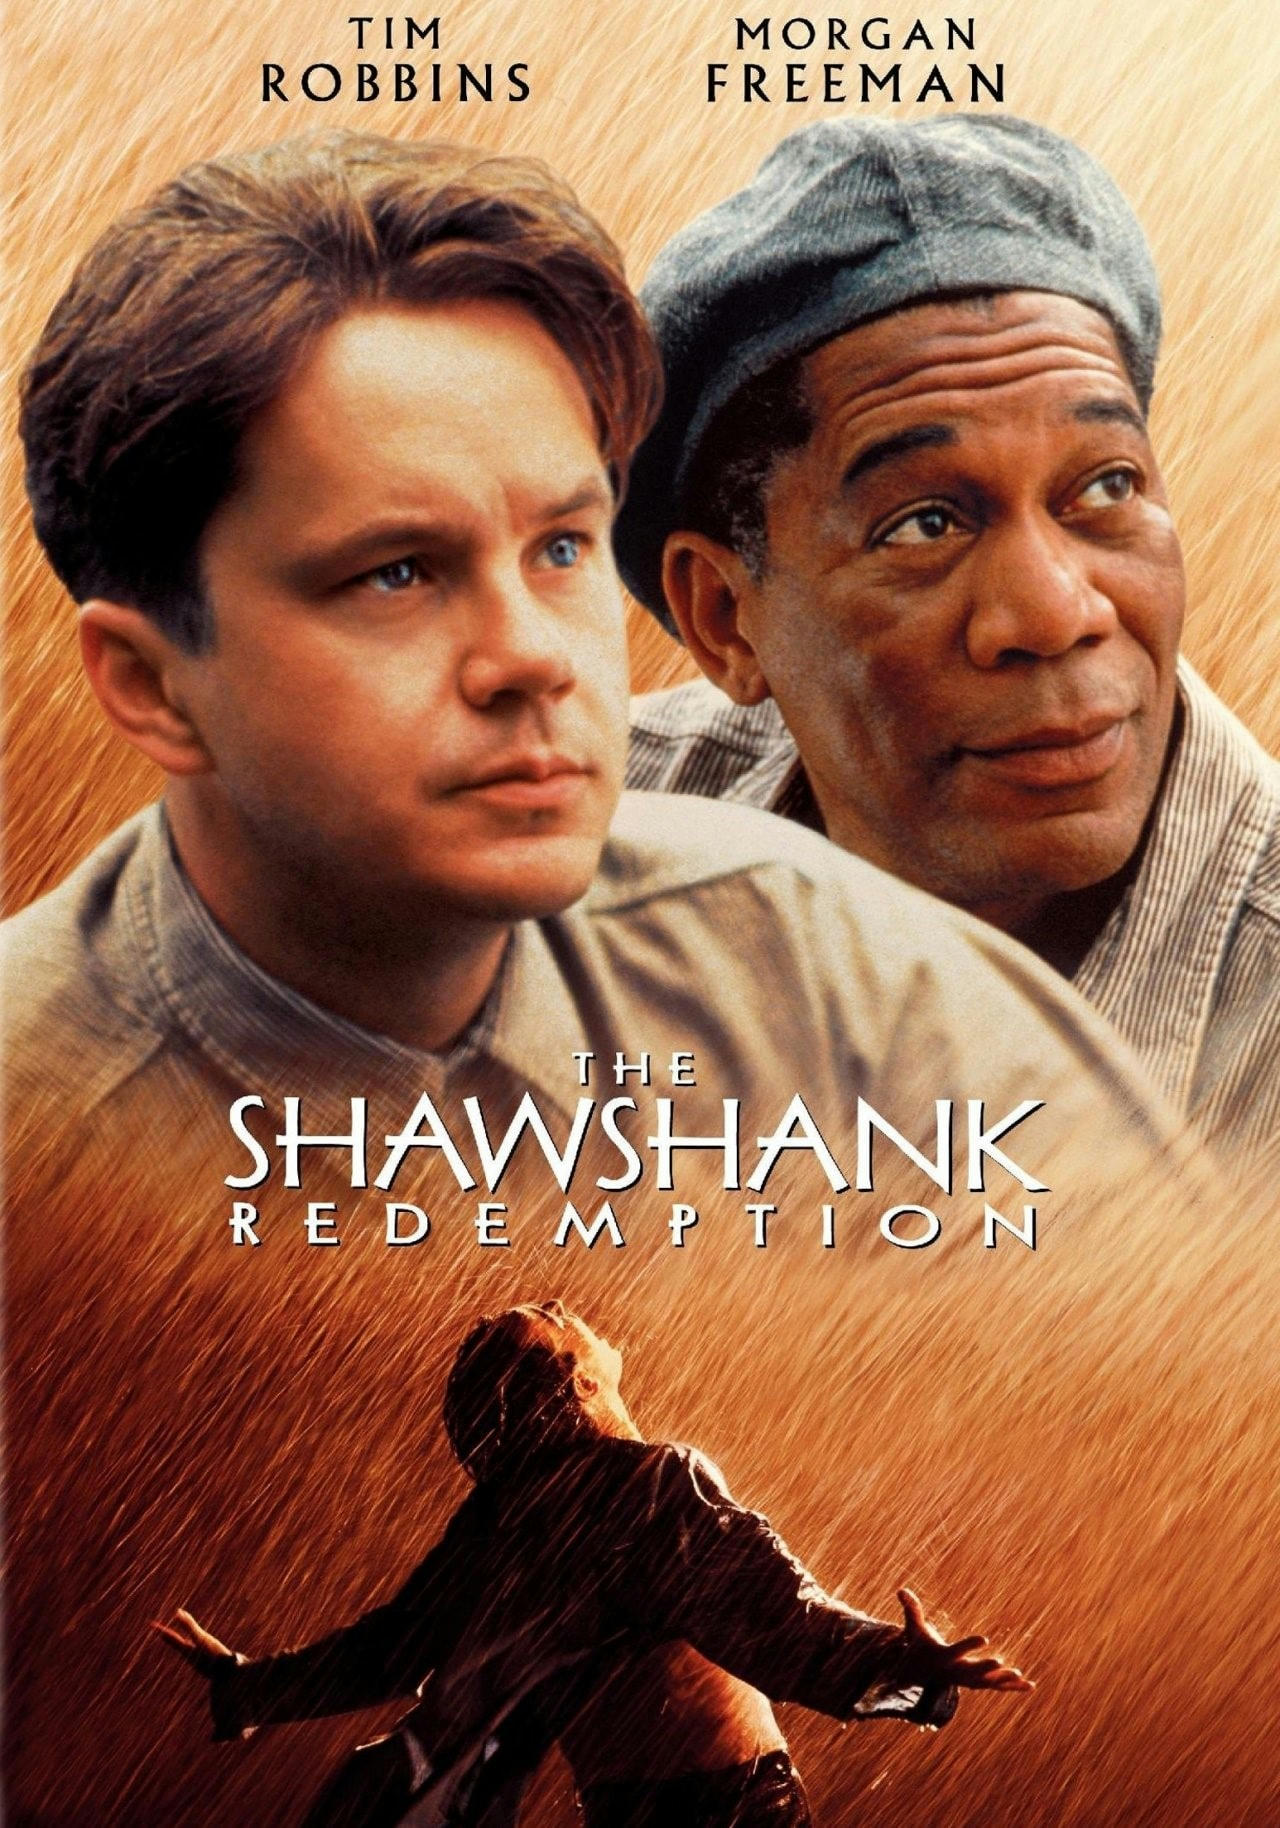 The shawshank redemption 1994